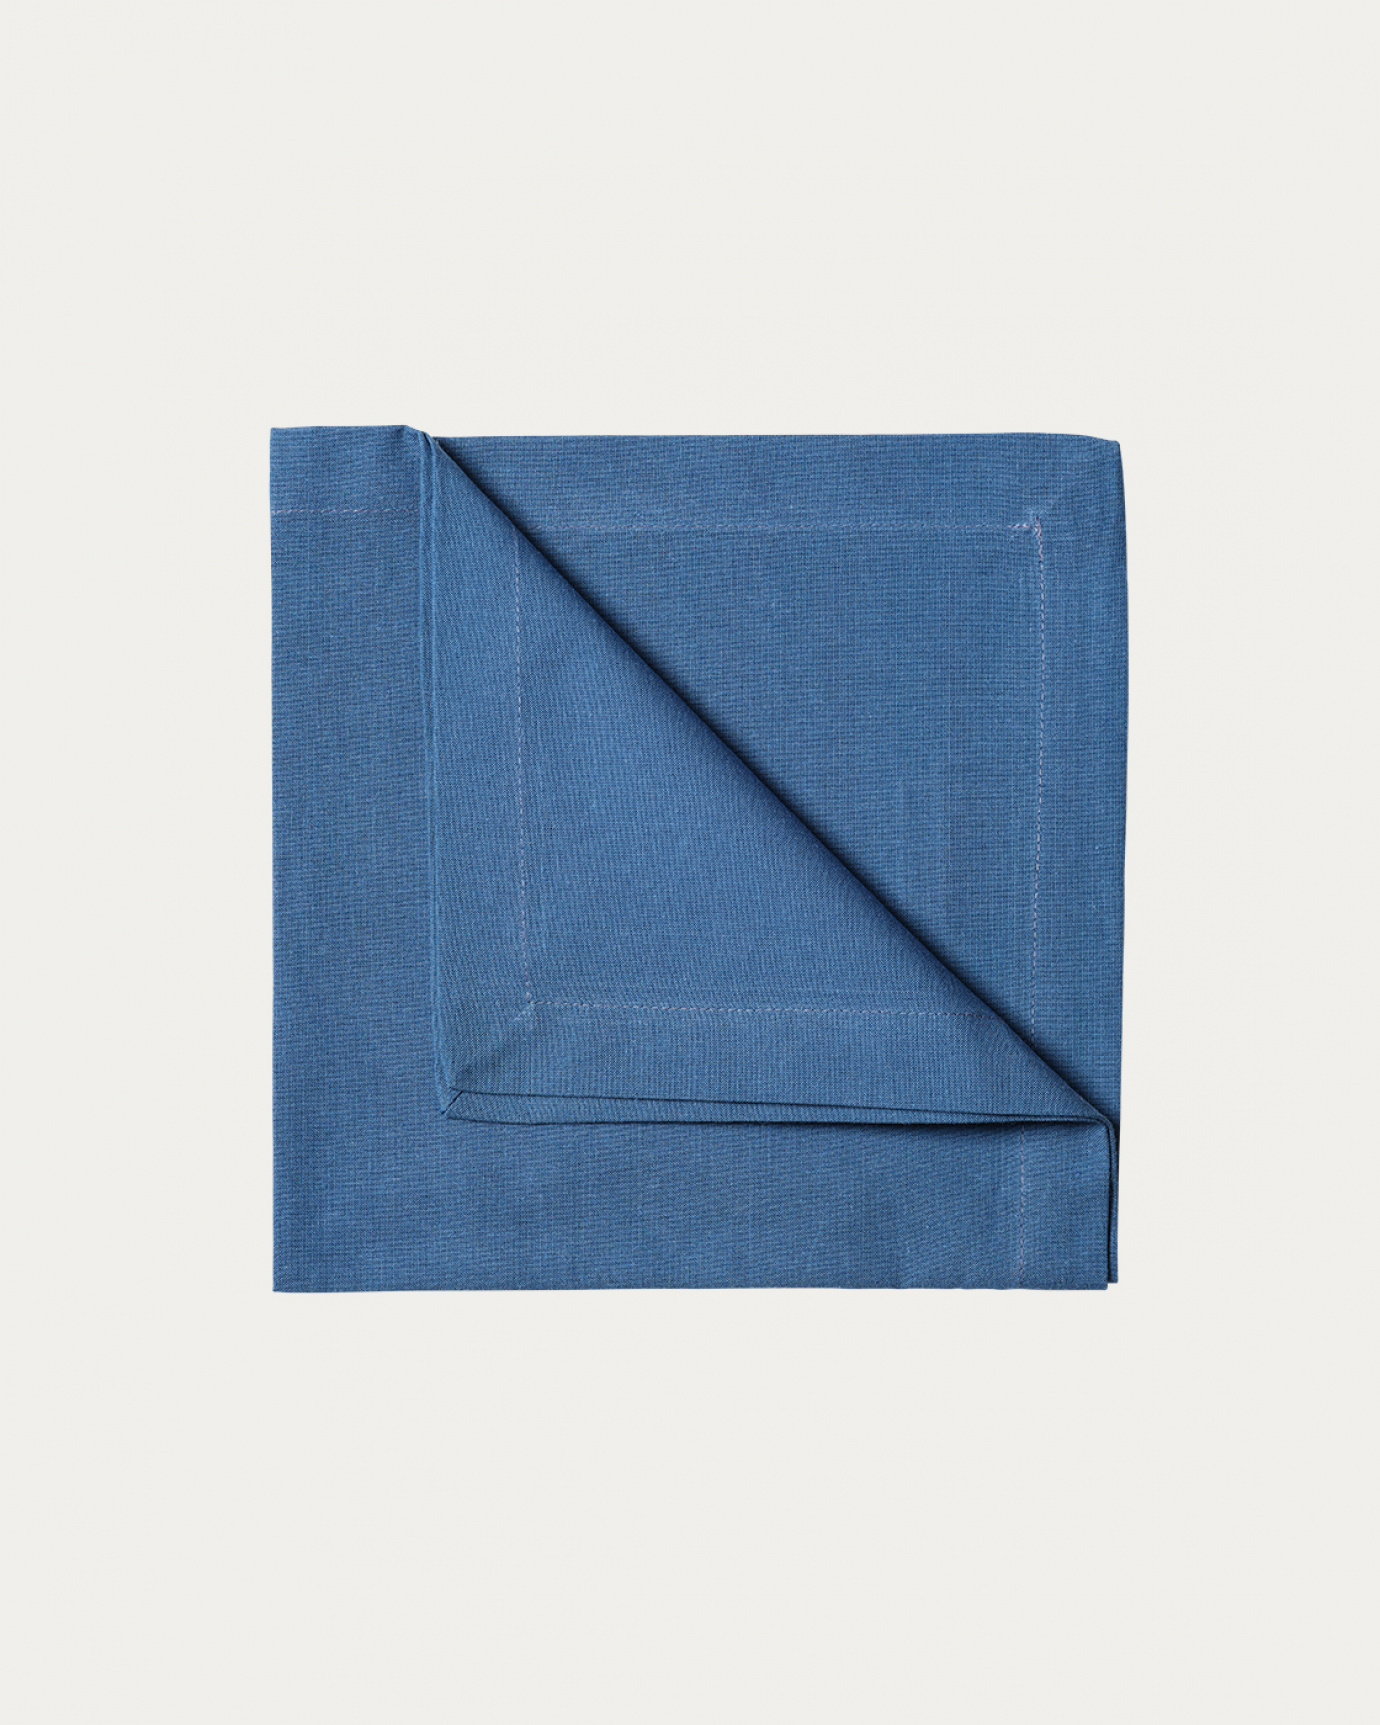 Immagine prodotto blu mare profondo ROBERT tovagliolo in morbido cotone di LINUM DESIGN. Dimensioni 45x45 cm e venduto in 4-pezzi.